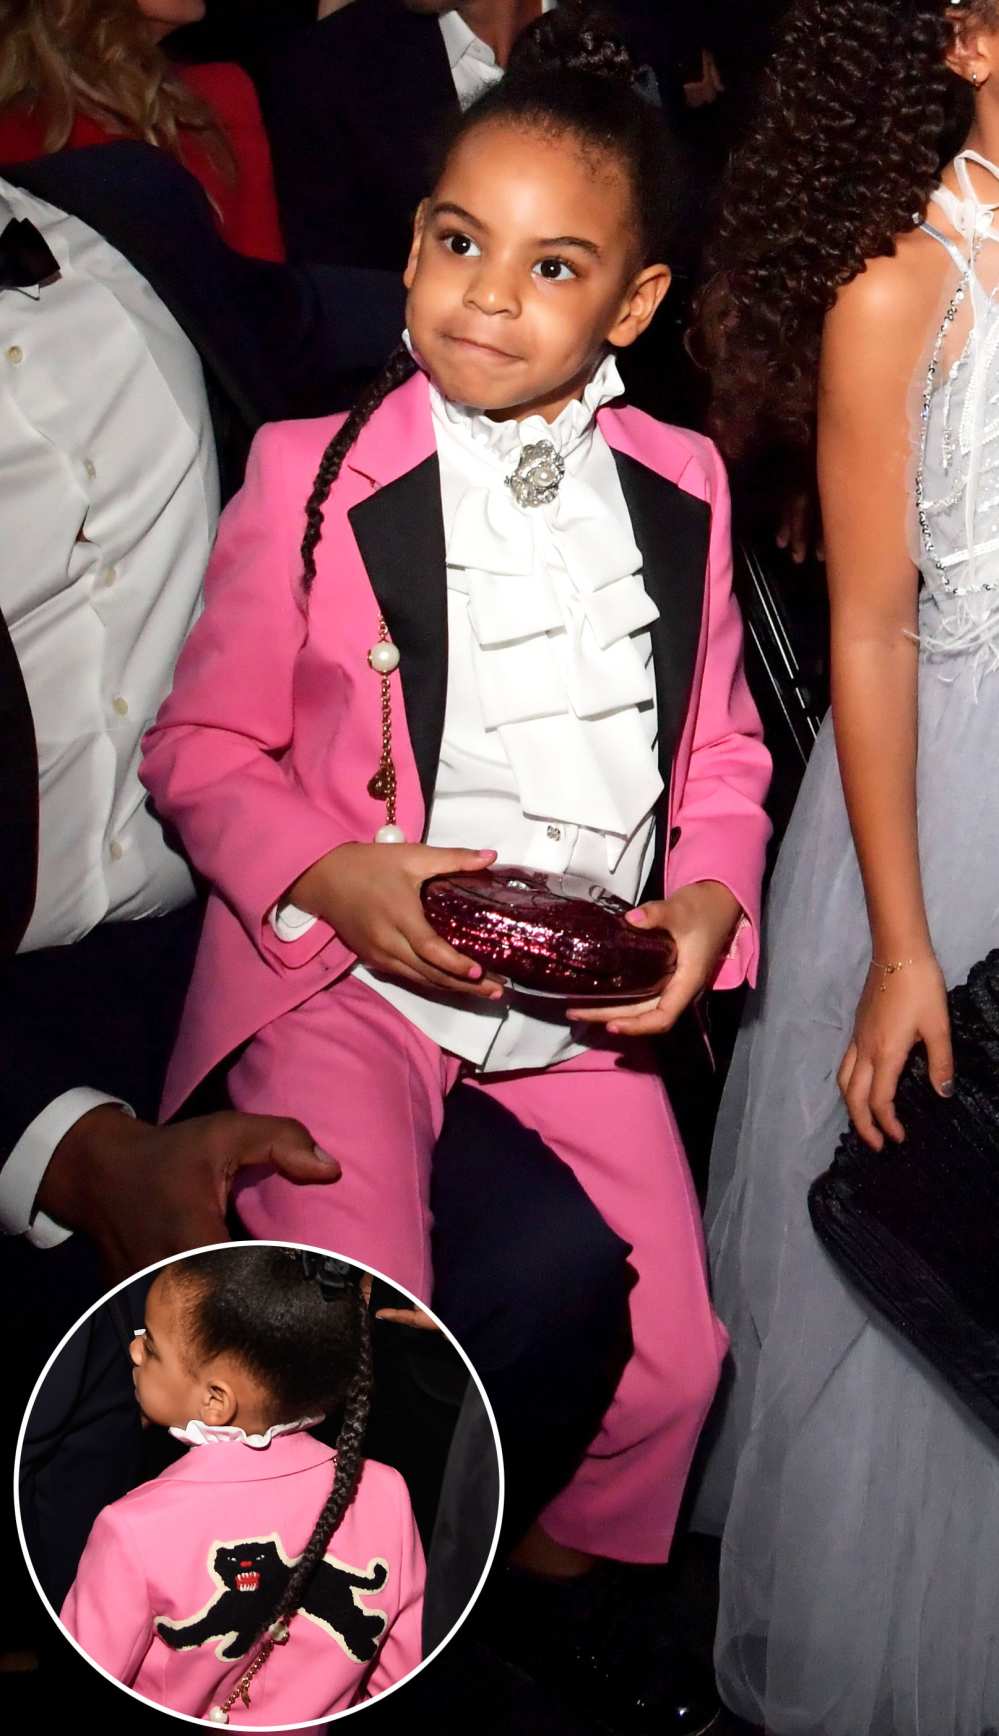 Schoolboy Q Girl Power Sweatshirt Grammys 2017 - Schoolboy Q and Daughter  Wear Pink at Grammys 2017